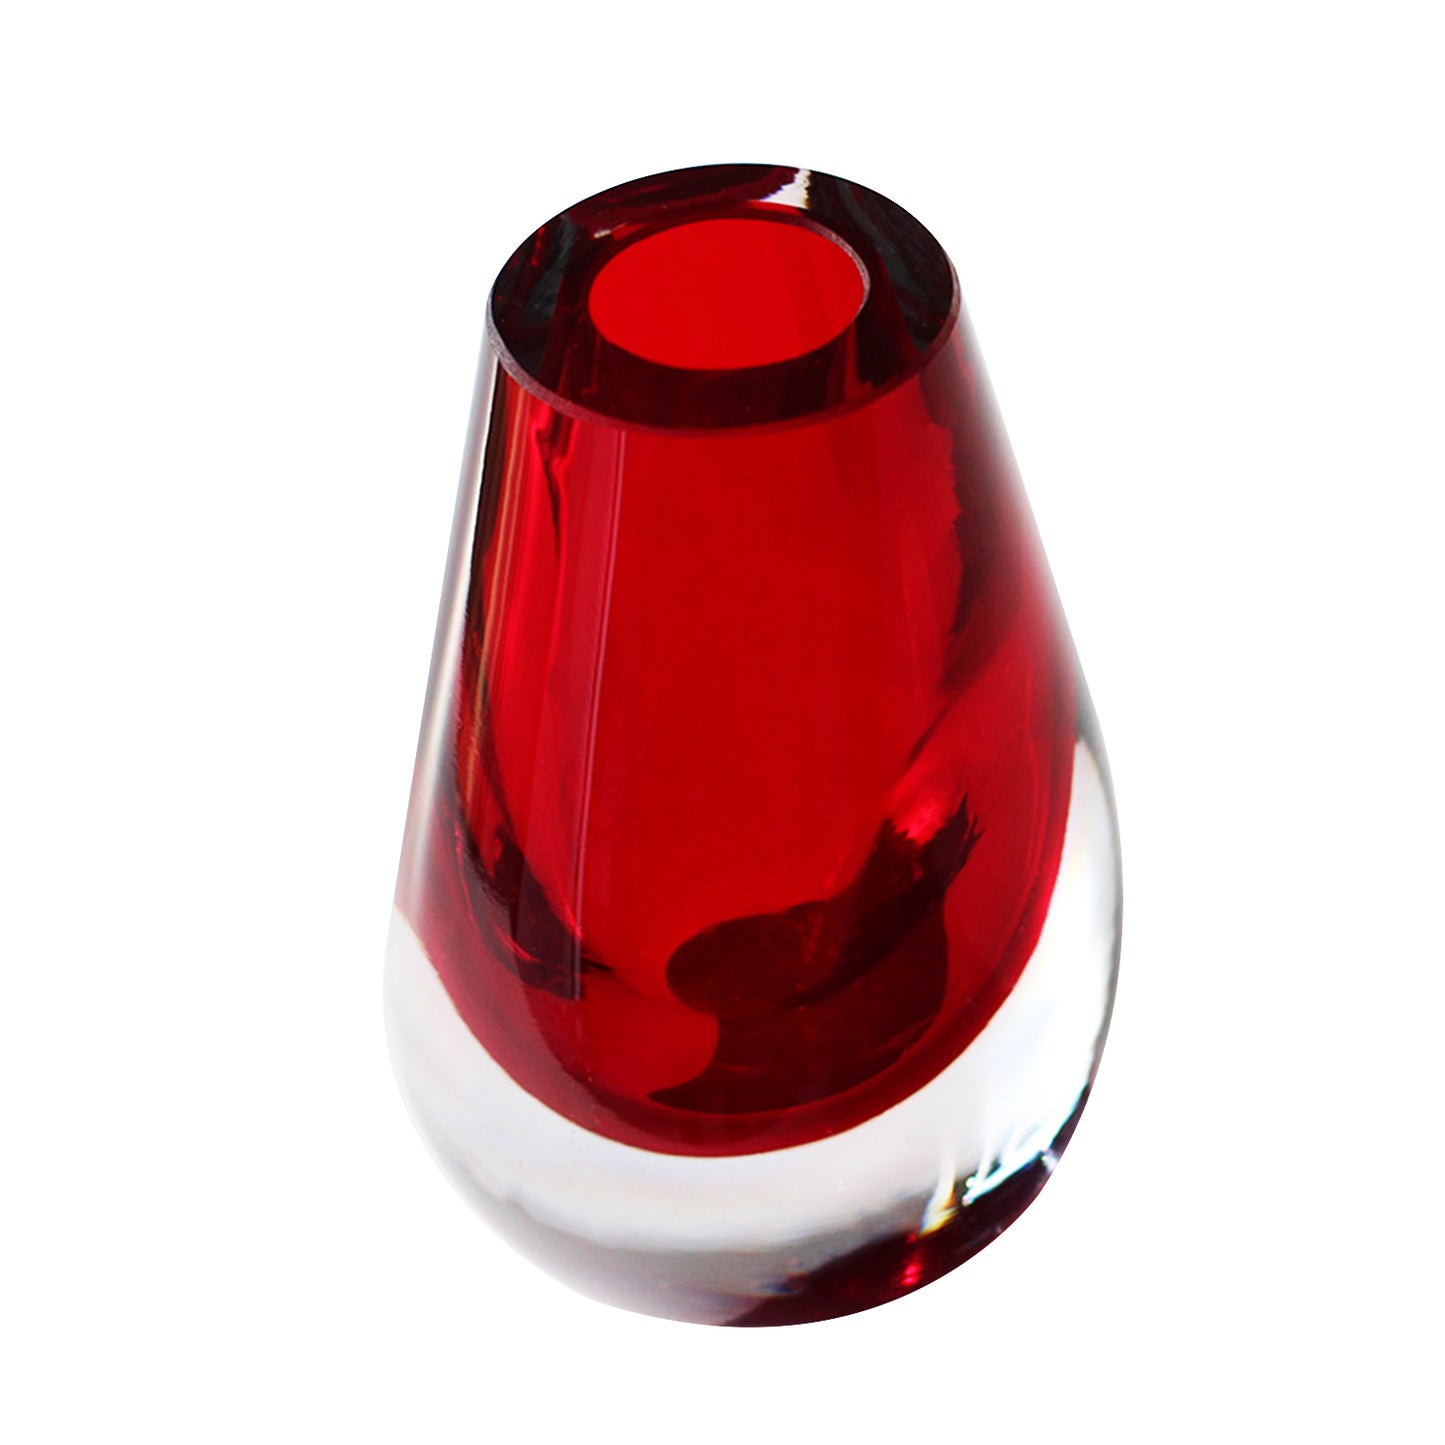 Rote Tropfenvase – dickes Glas – Fassung geblasen – umweltfreundlich